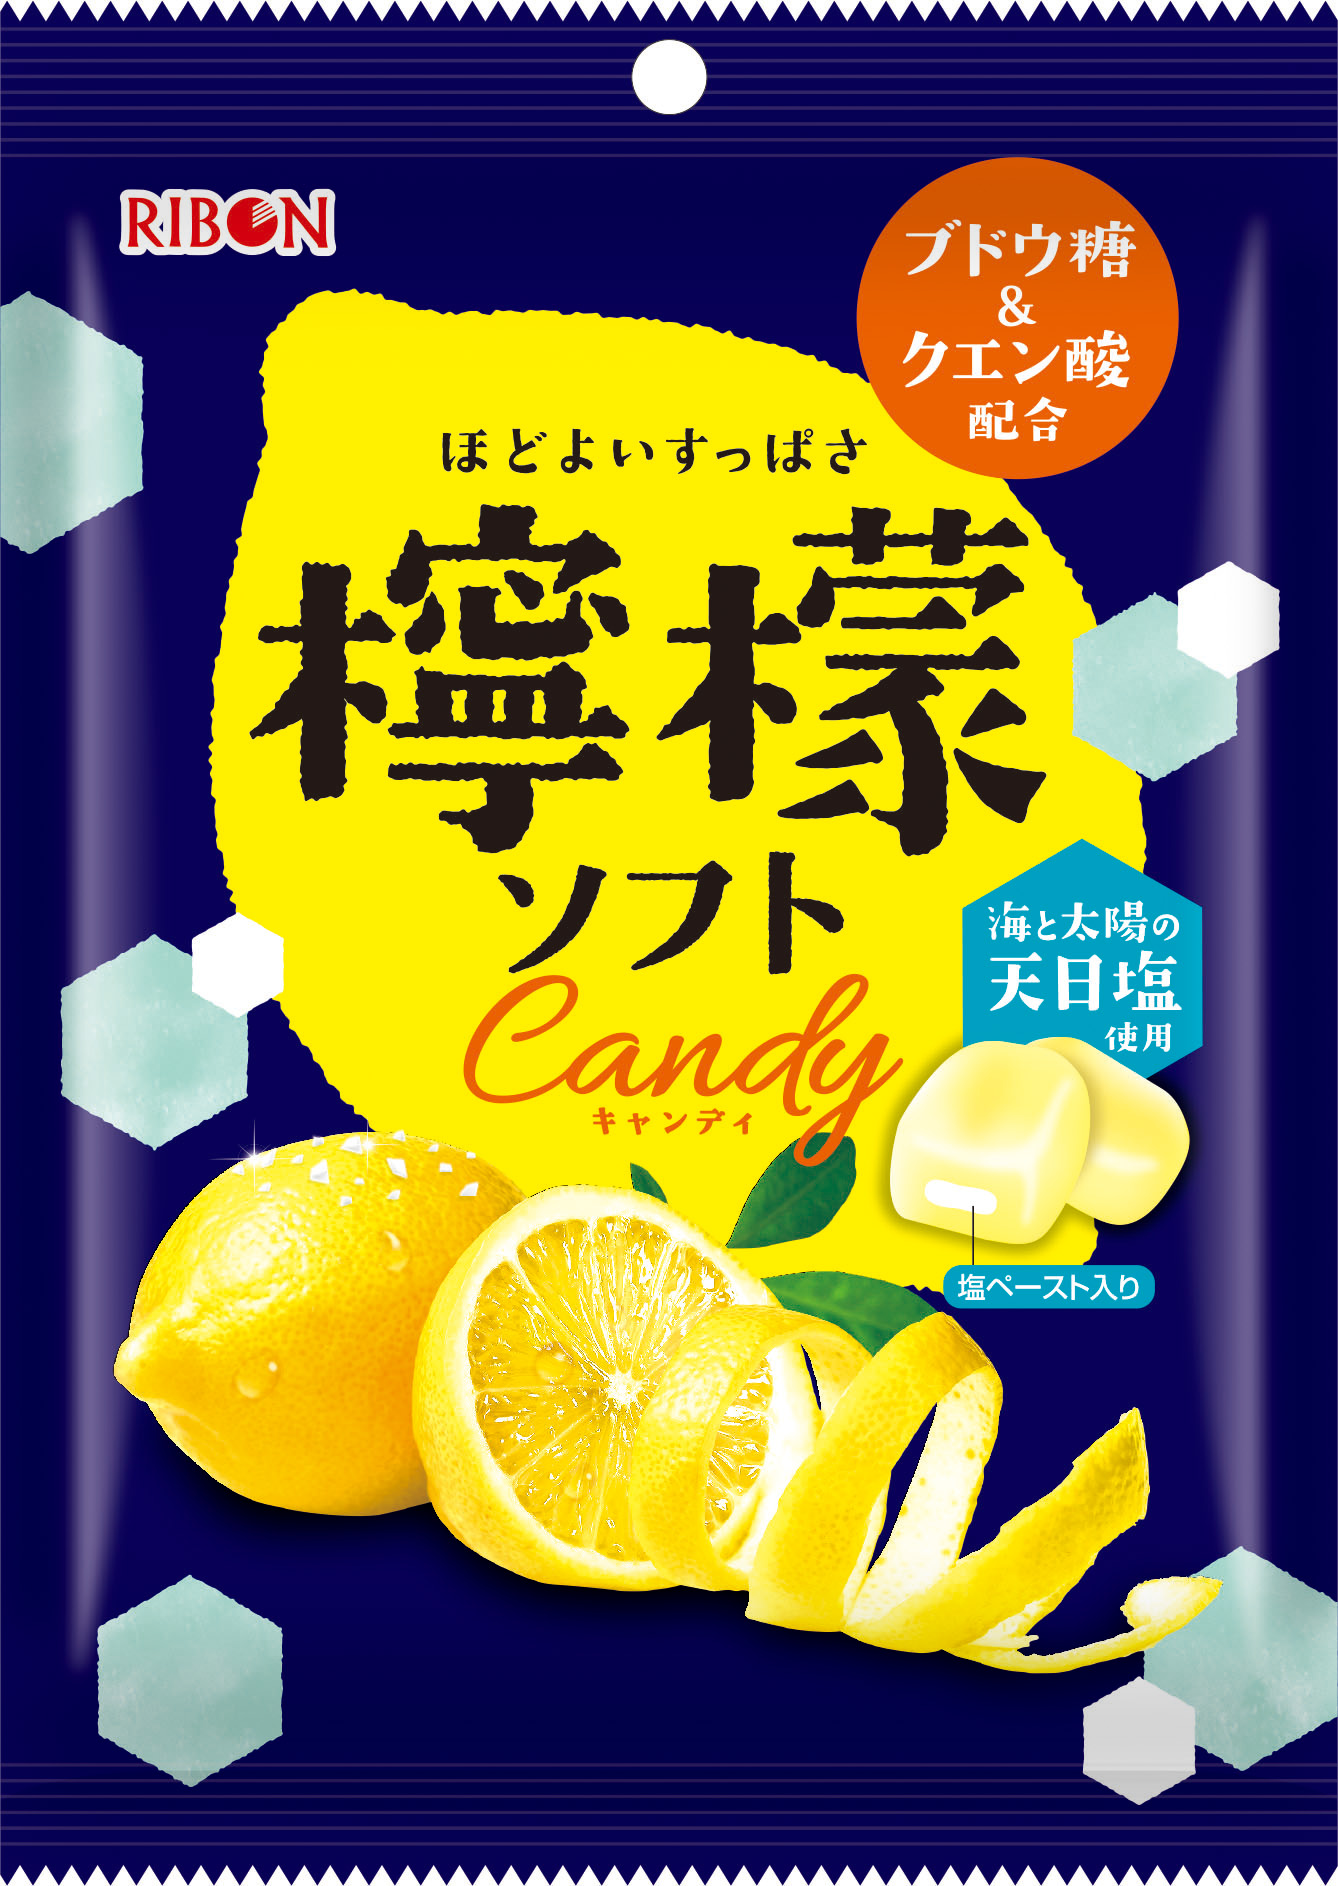 食べて爽やかな気分 リボンの新しい夏キャンディ 檸檬ソフトキャンディ 新発売 株式会社リボンのプレスリリース